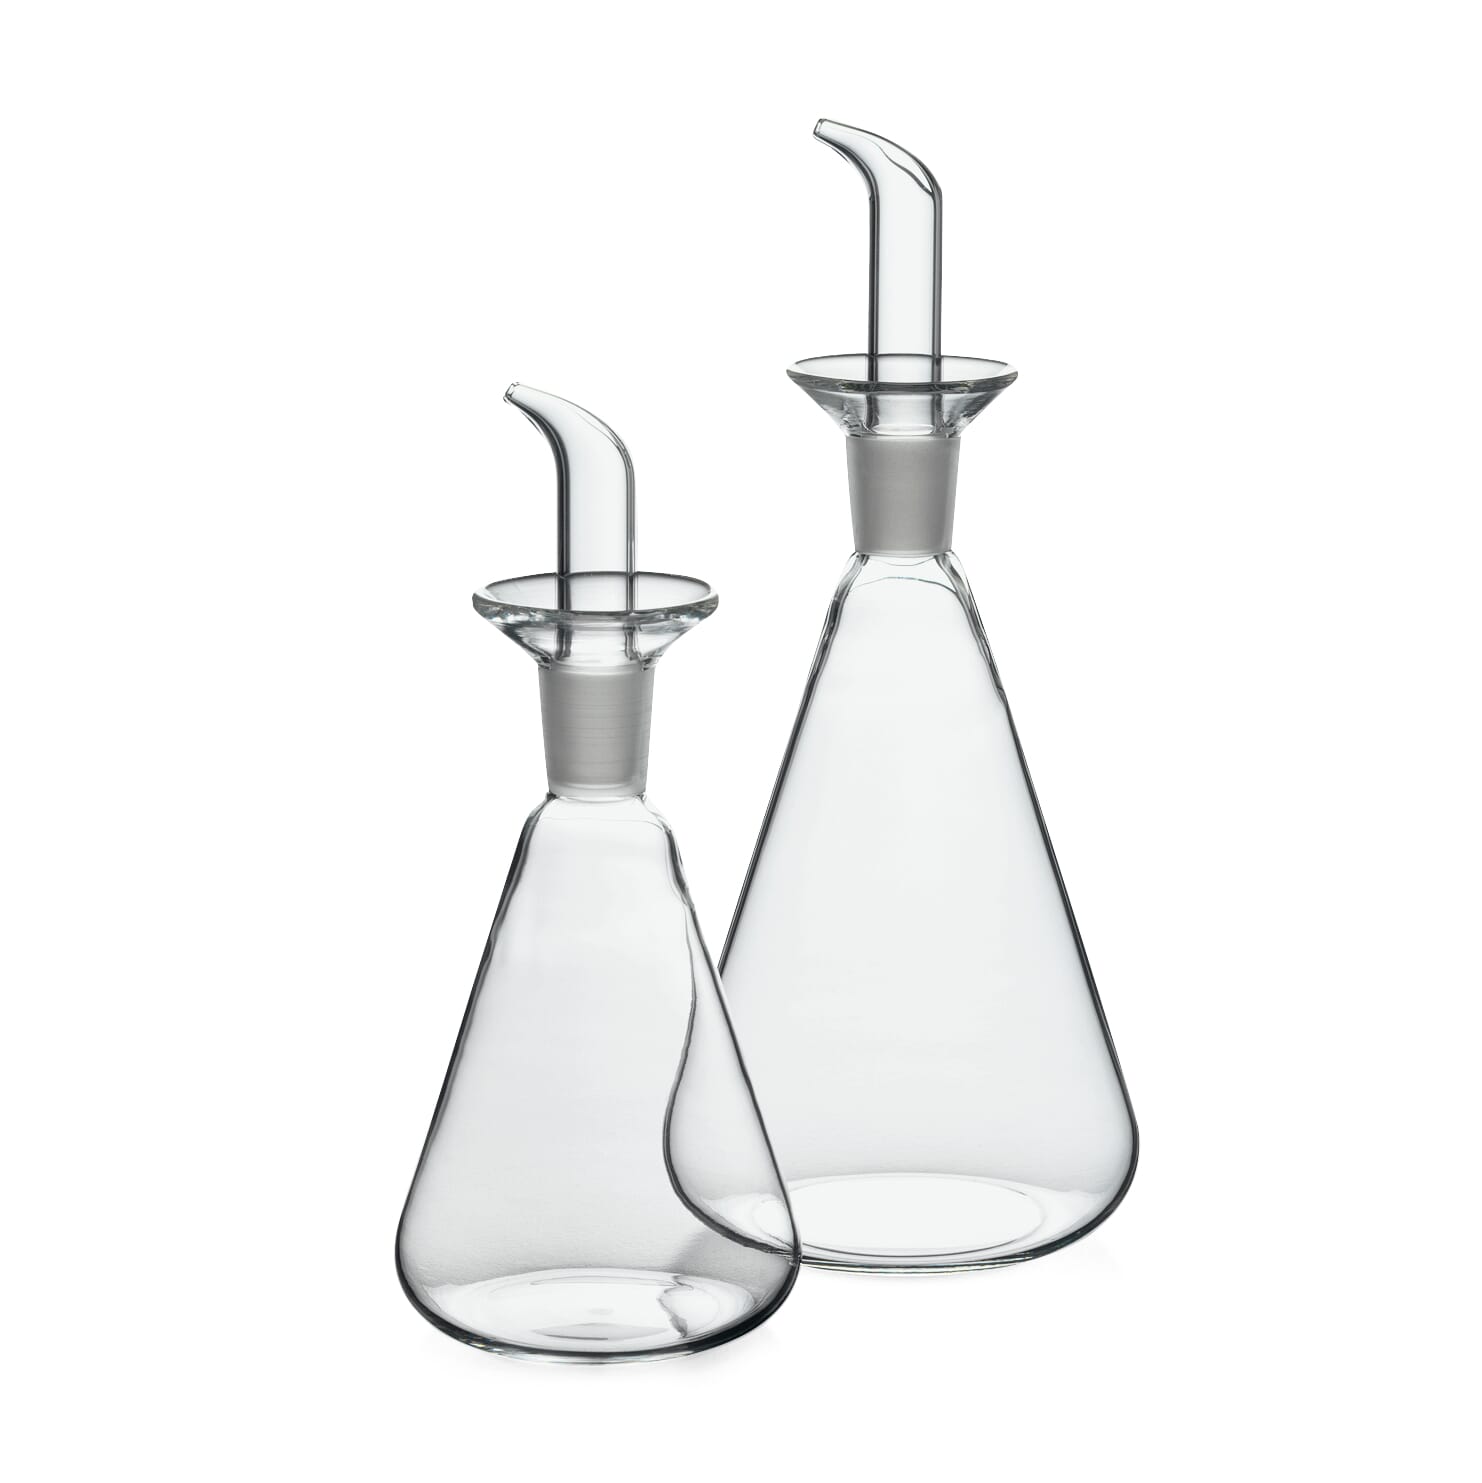 https://assets.manufactum.de/p/081/081470/81470_02.jpg/oil-vinegar-bottle-borosilicate-glass.jpg